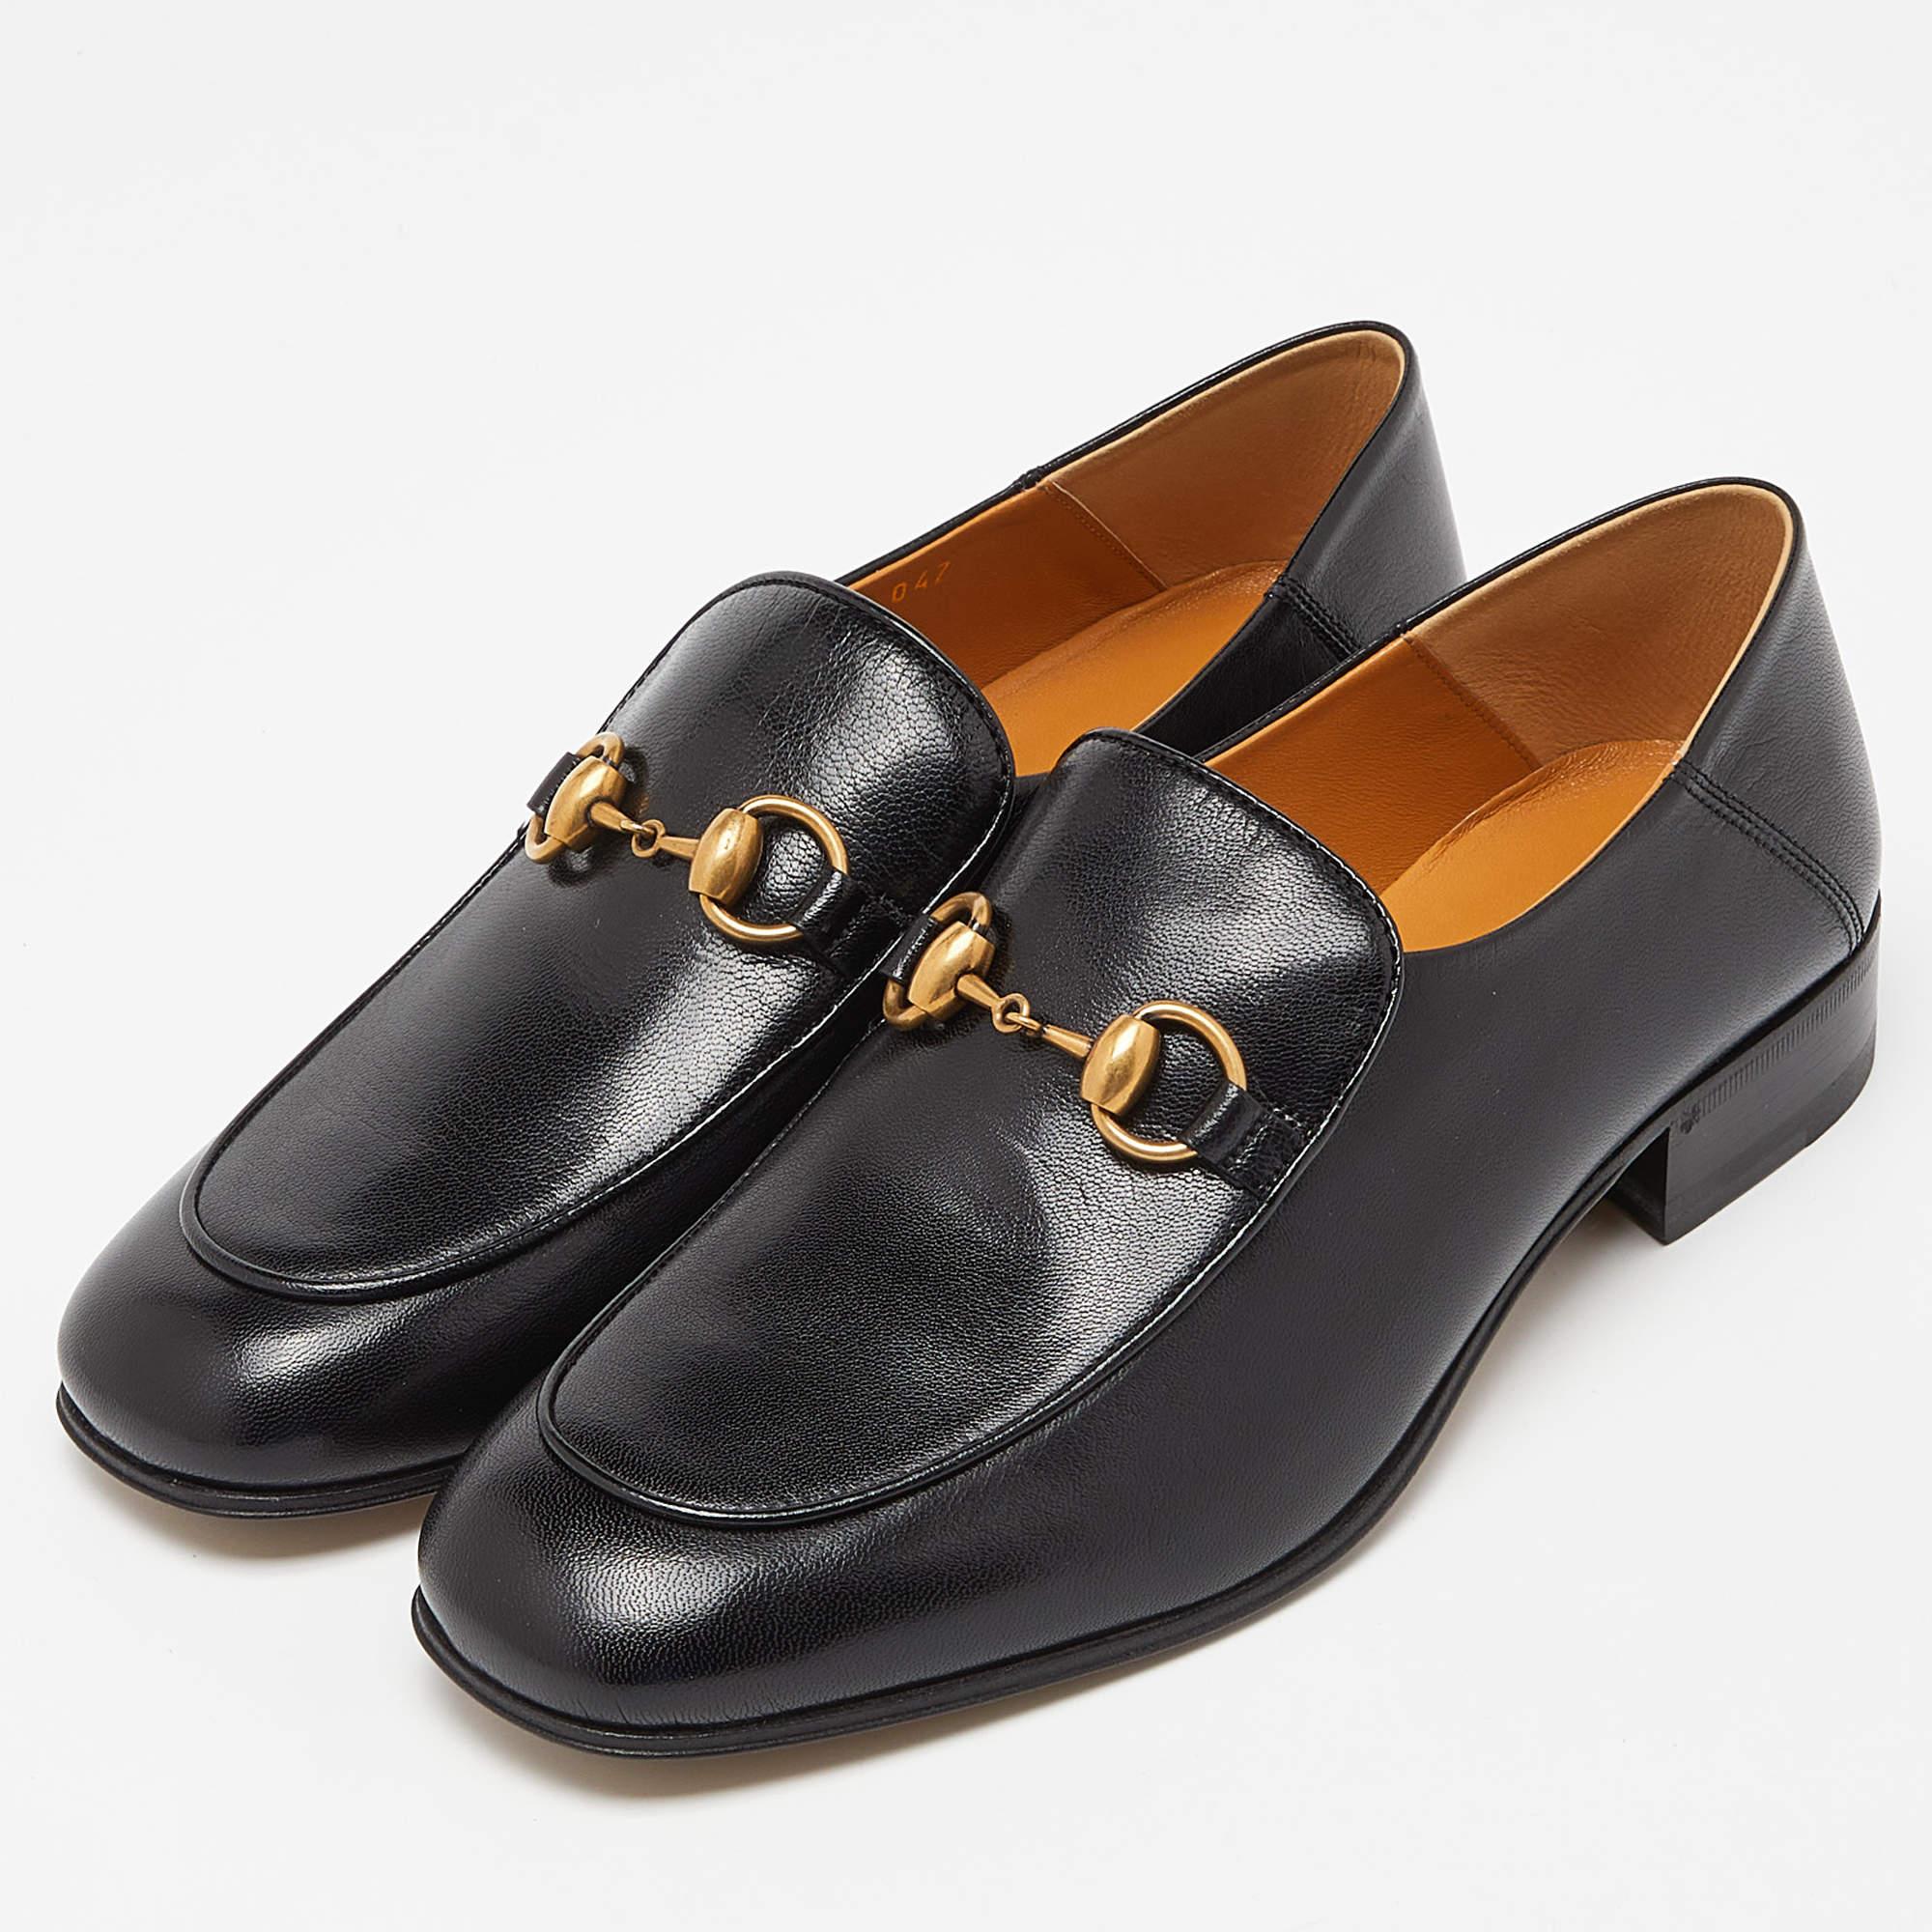 Gucci Black Leather Horsebit Loafers Size 38.5 In New Condition For Sale In Dubai, Al Qouz 2